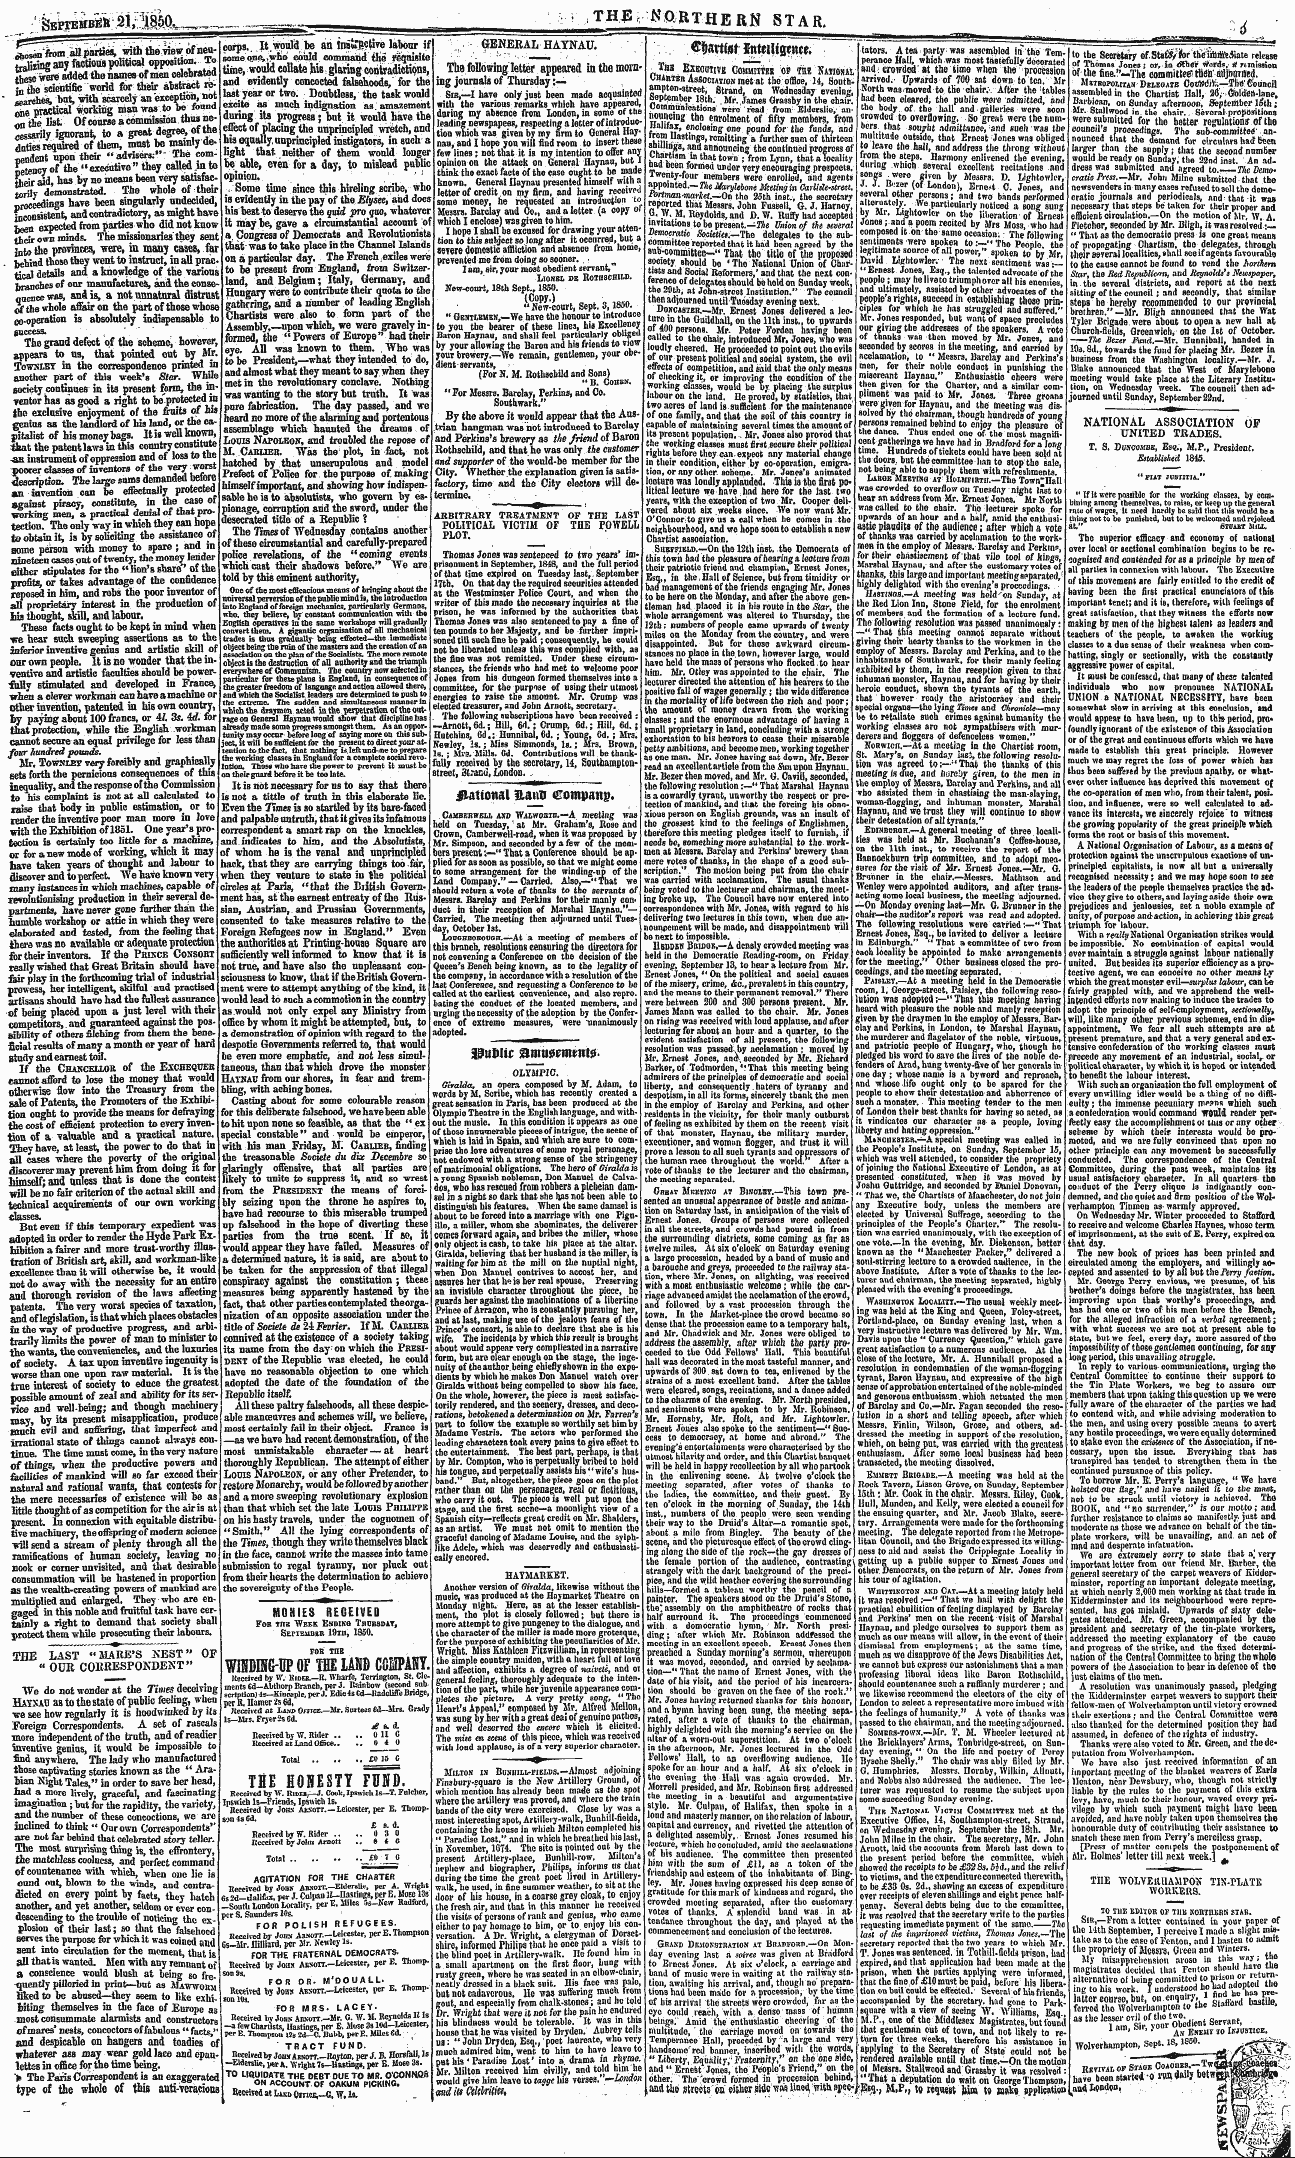 Northern Star (1837-1852): jS F Y, 3rd edition - Gumt Mtiliqmt